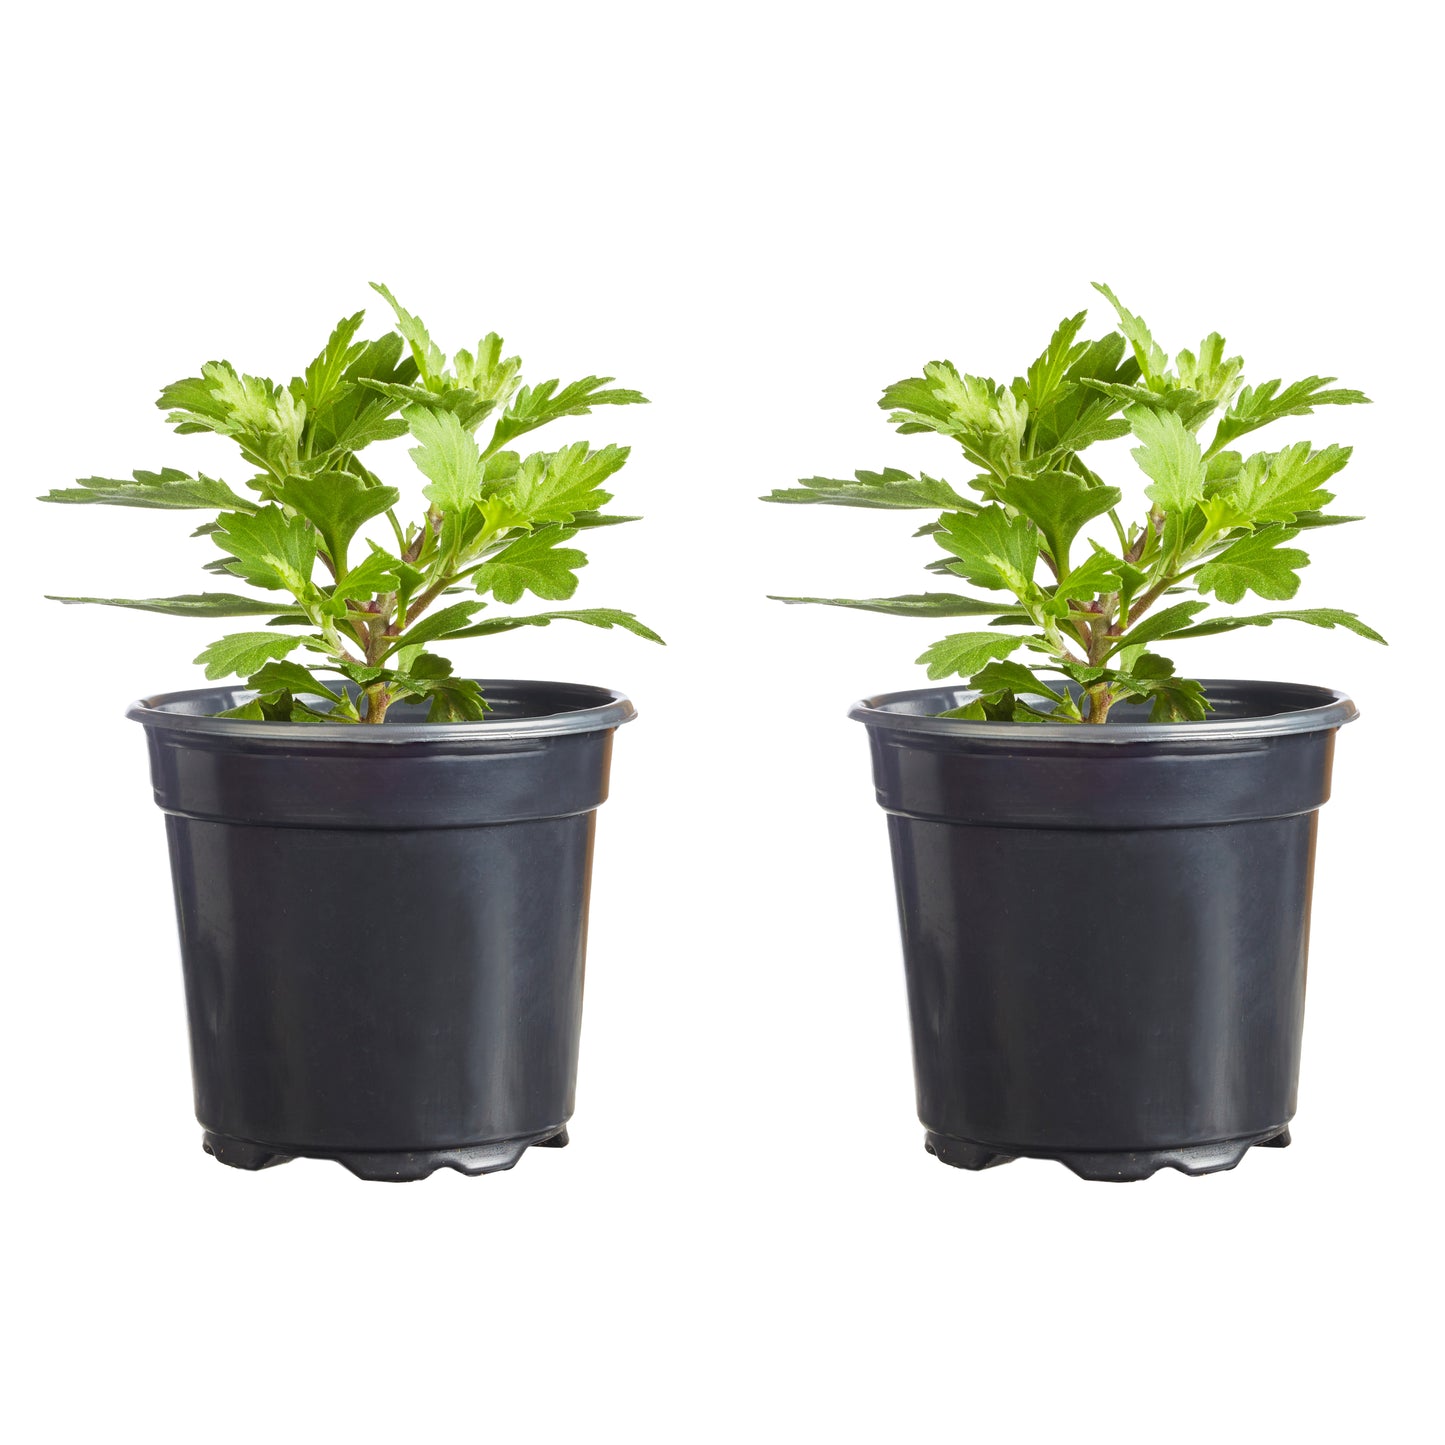 Mums Milkshake Kiwi Bronze Plantlings Plus Live Baby Plants 4in. Pot, 2-Pack